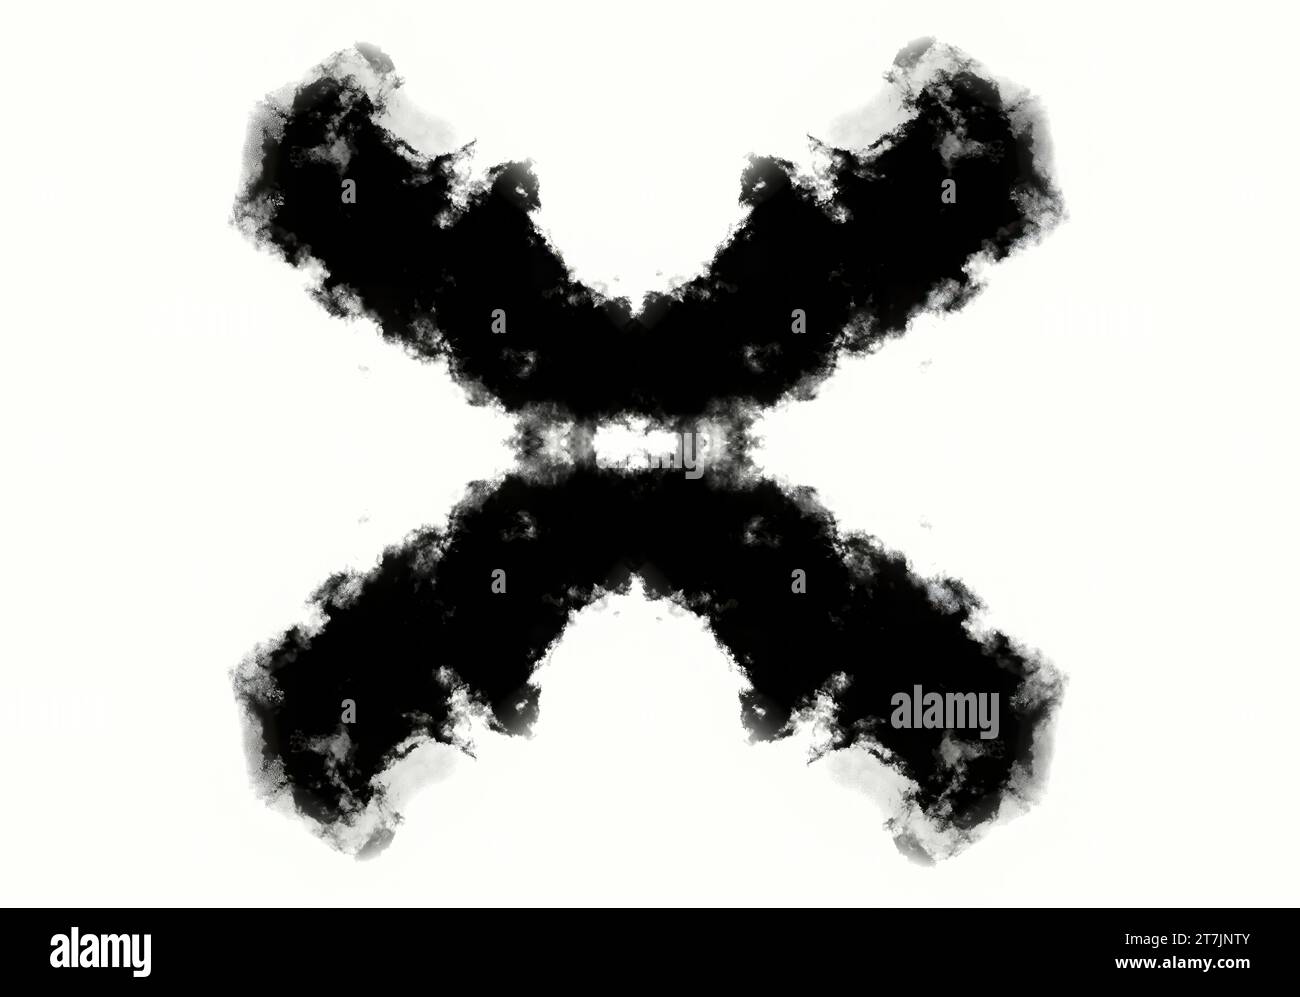 Croce di prova Rorschach fatta di inchiostro, scheda di prova psicologica illustrazione concettuale Foto Stock